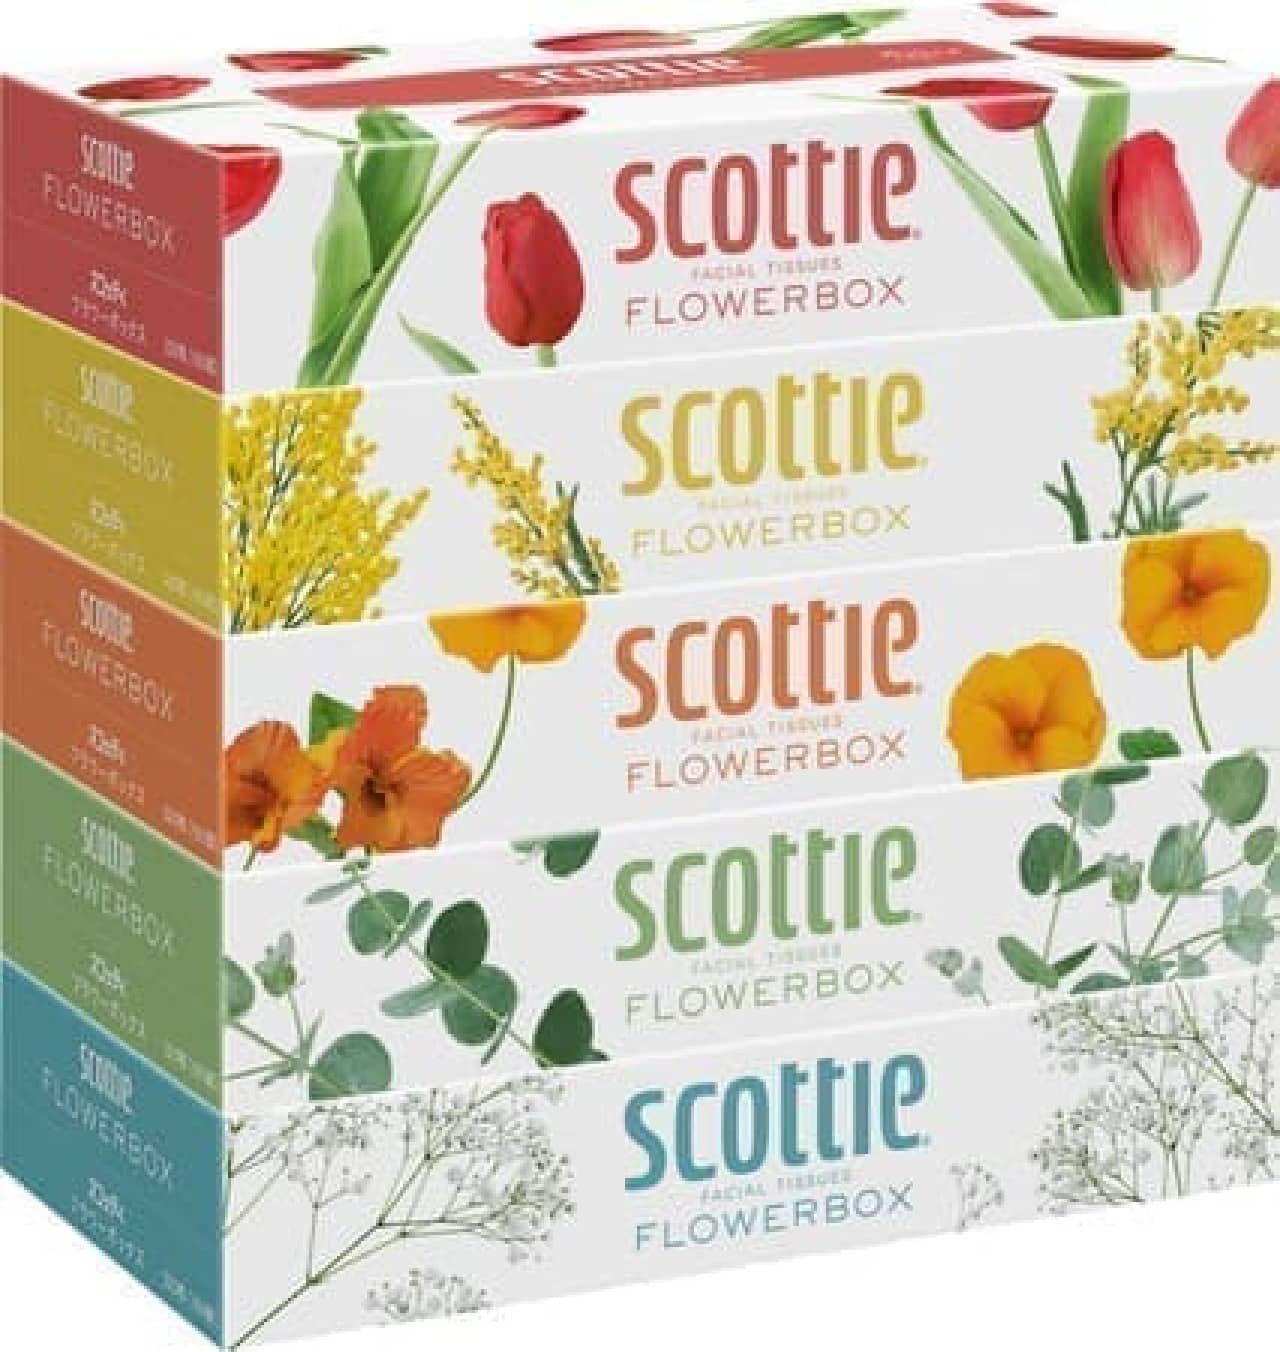 「スコッティ ティシュー フラワーボックス 5箱パック」新デザインに -- 花屋から花を持ち帰るようなワクワク感